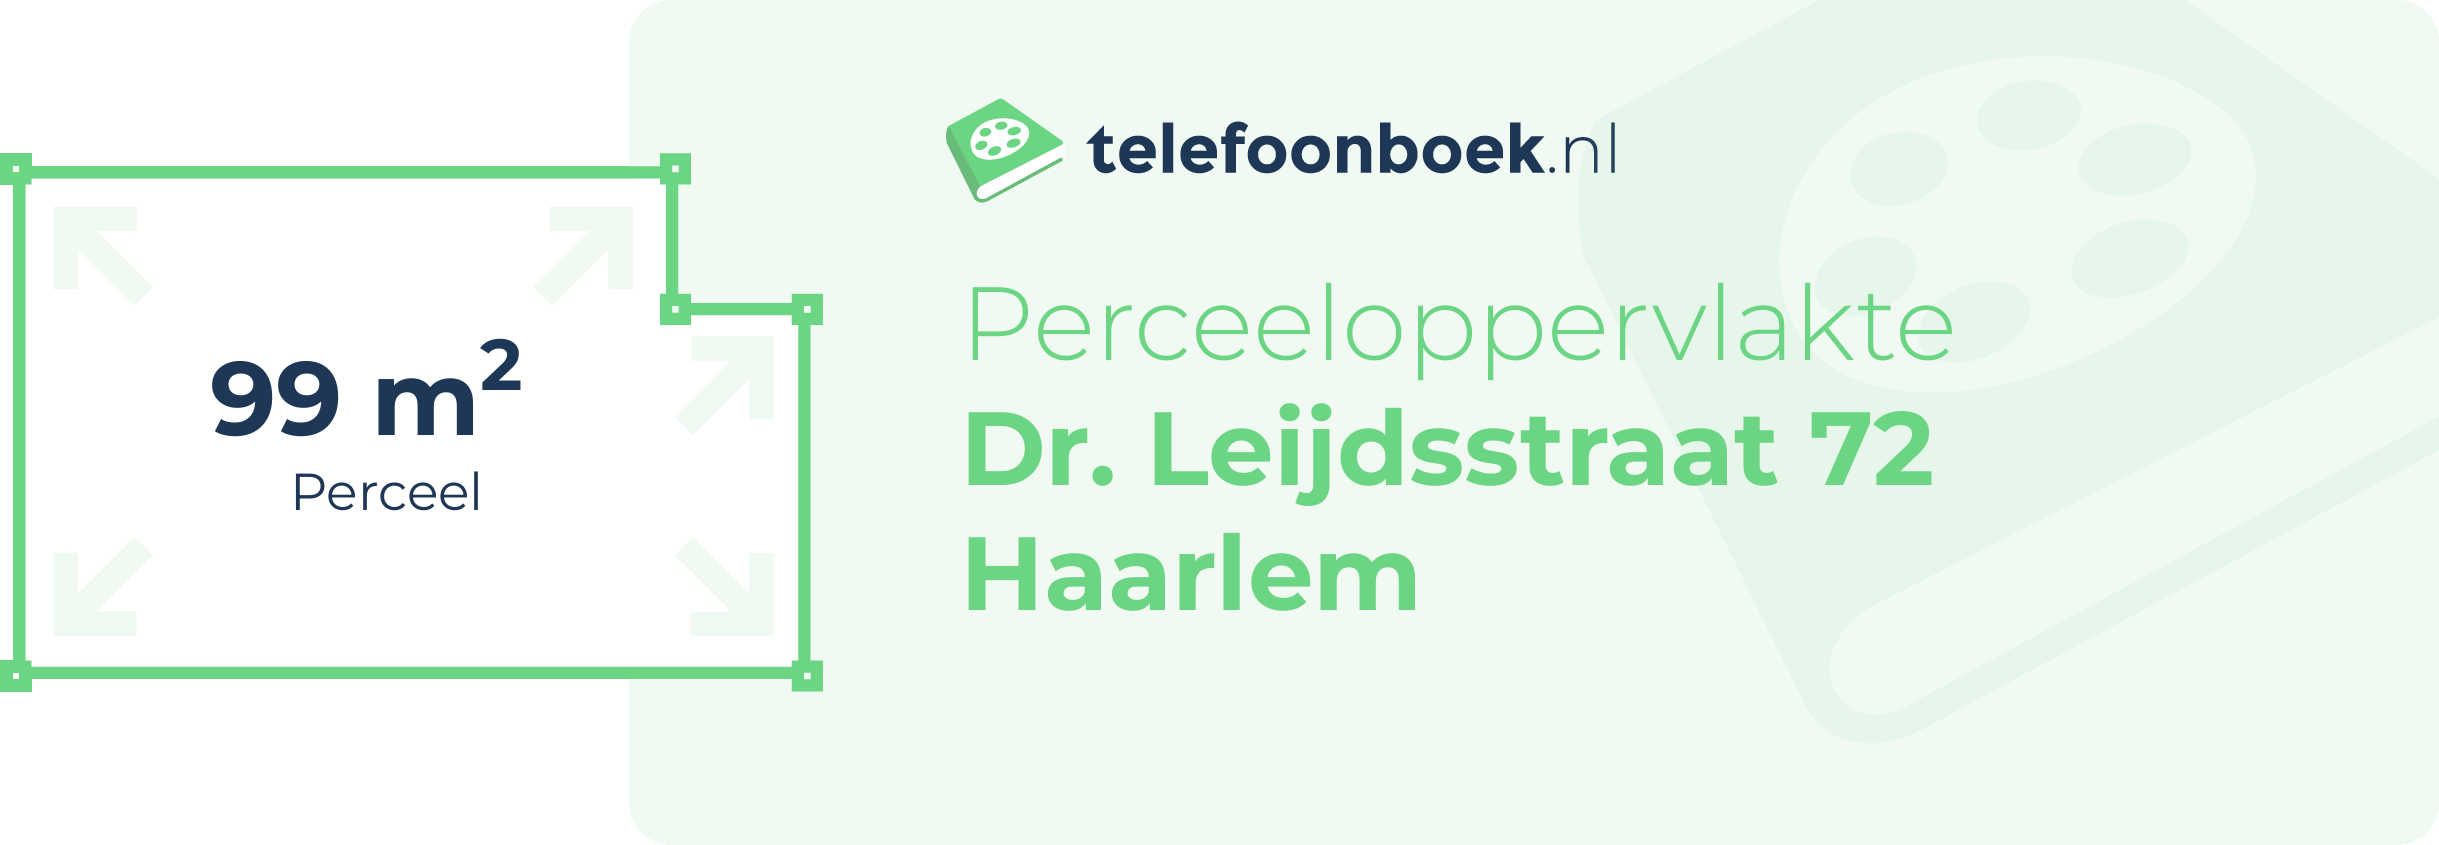 Perceeloppervlakte Dr. Leijdsstraat 72 Haarlem